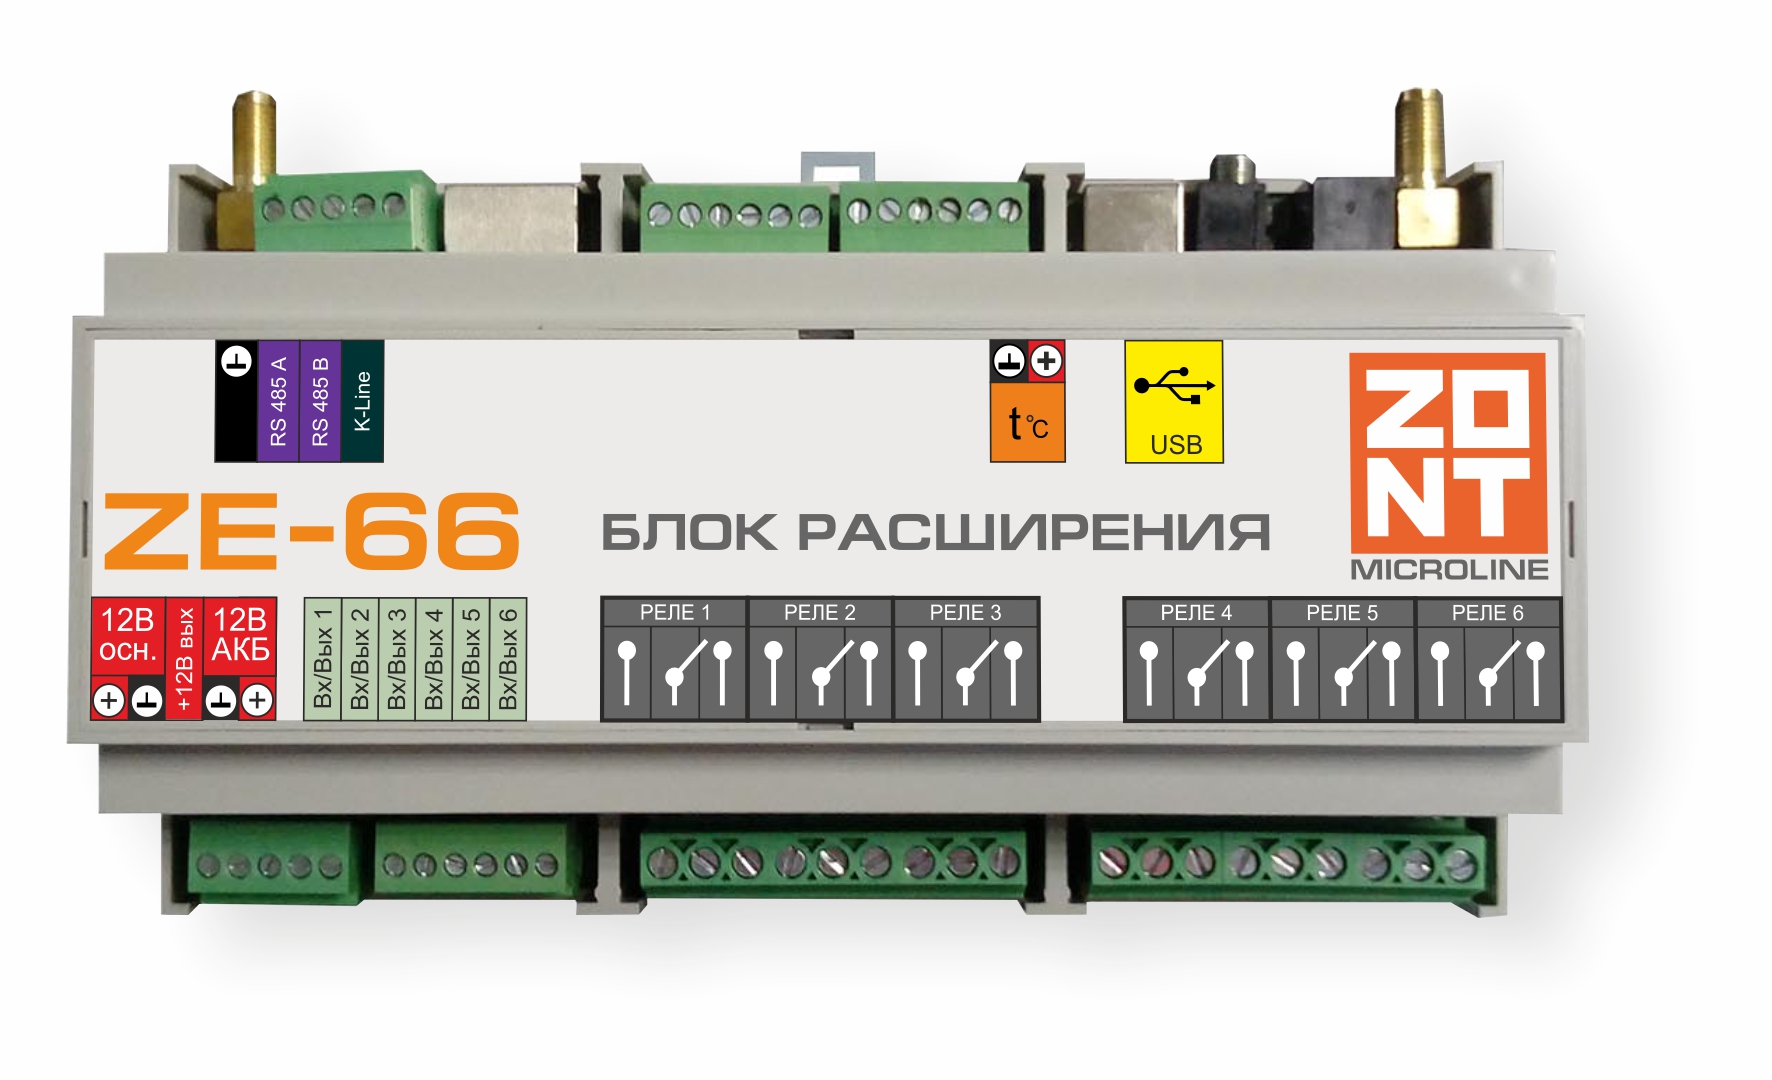 Детальное изображение товара "Блок расширения ZONT ZE-66" из каталога оборудования для видеонаблюдения